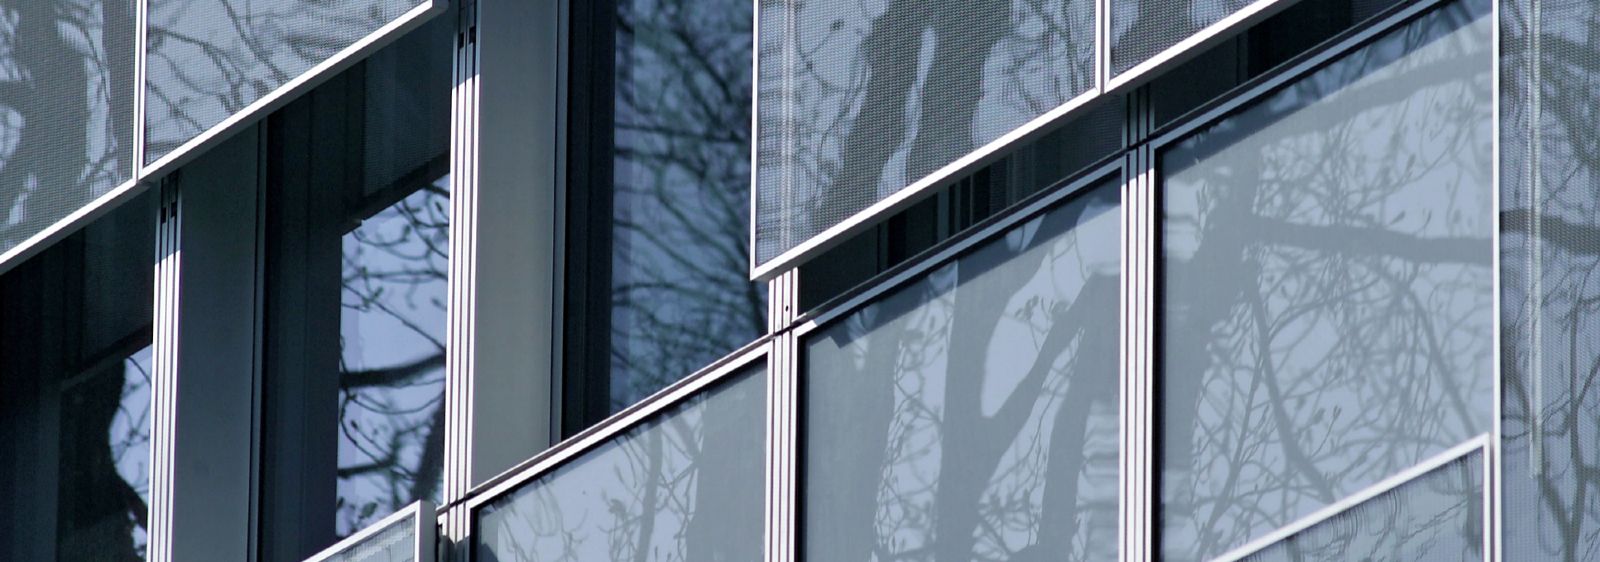 Detail der neuen Fassade mit beweglichen Brüstungselementen aus Glas-Streckmetall als Sonnenschutz.